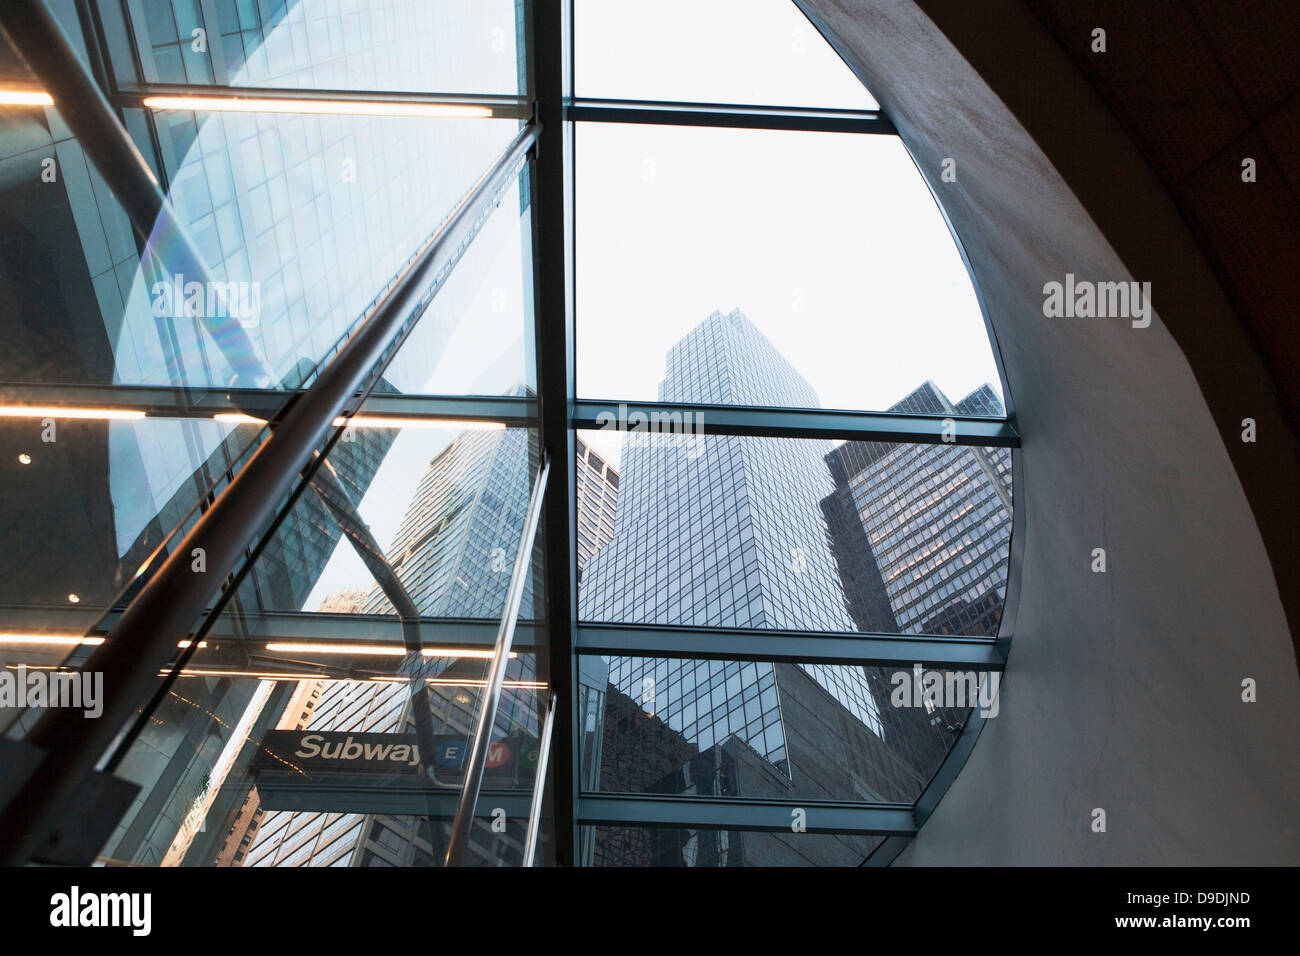 Grattacieli dall'entrata della metropolitana di New York City, Stati Uniti d'America Foto Stock